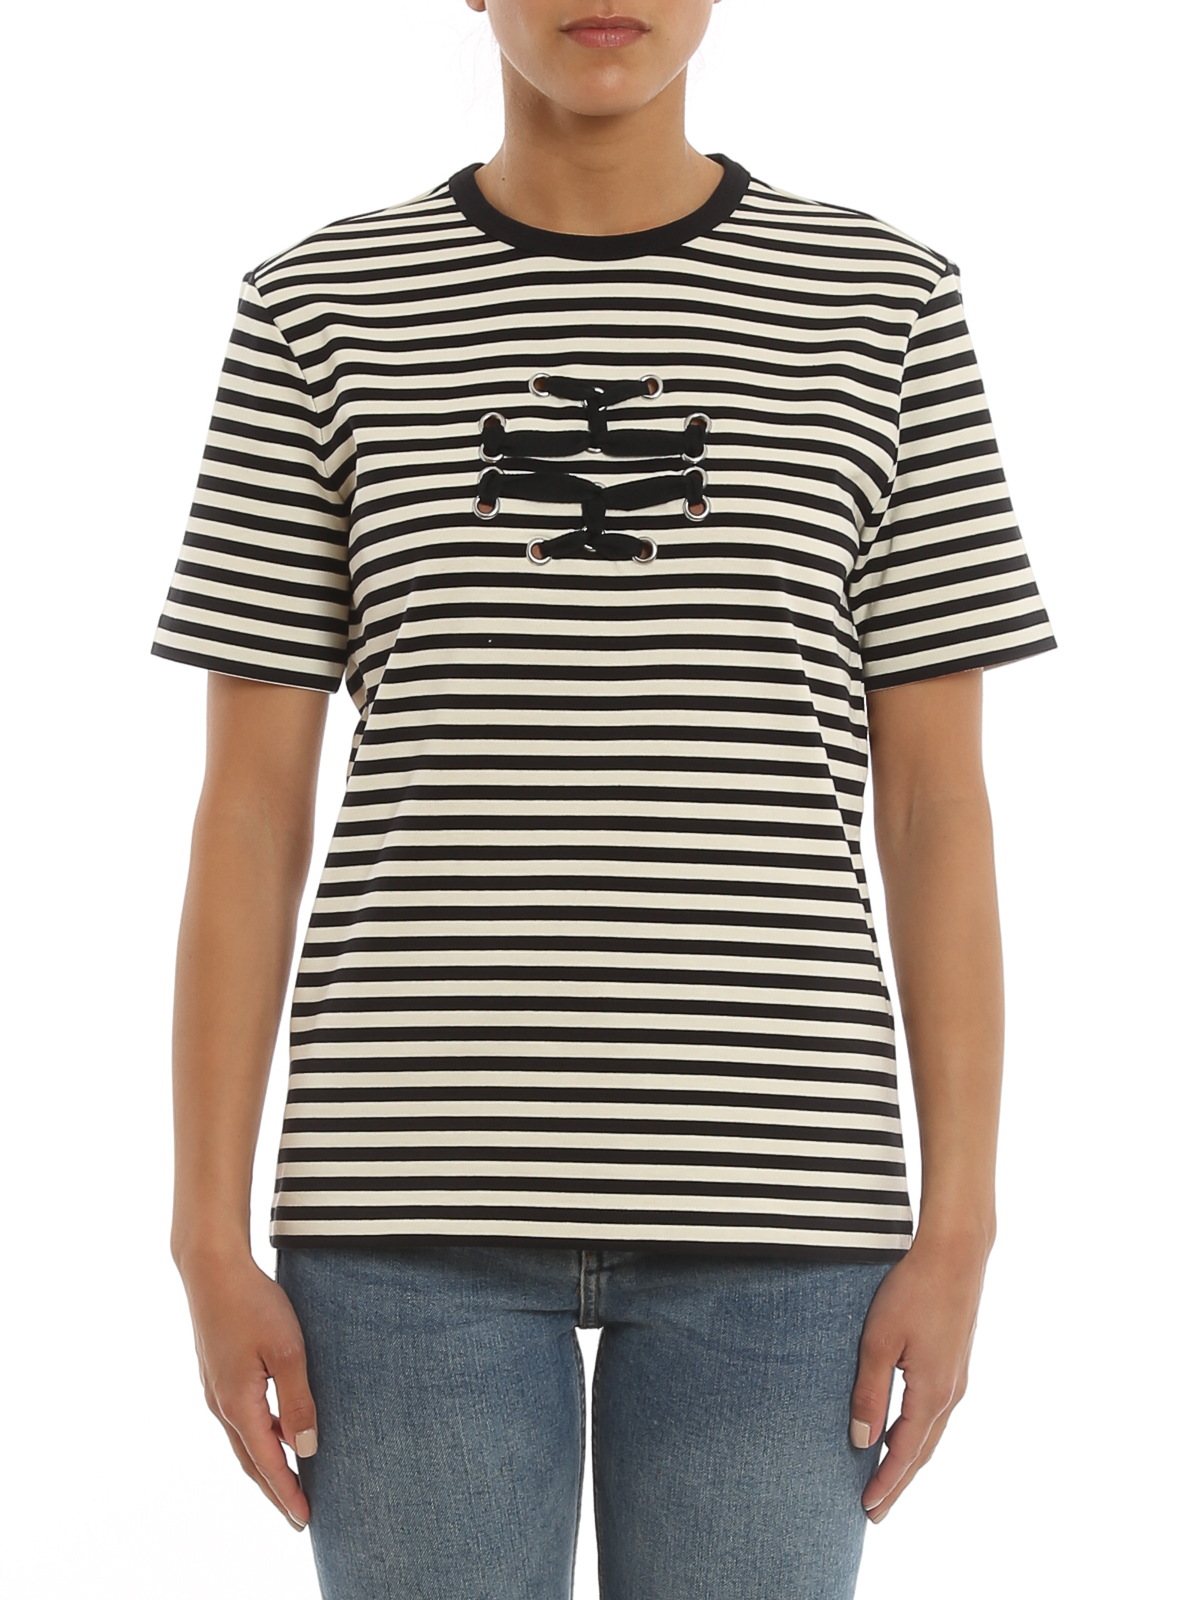 T-shirts Tory Burch - Woven logo striped T-shirt - 135575005 